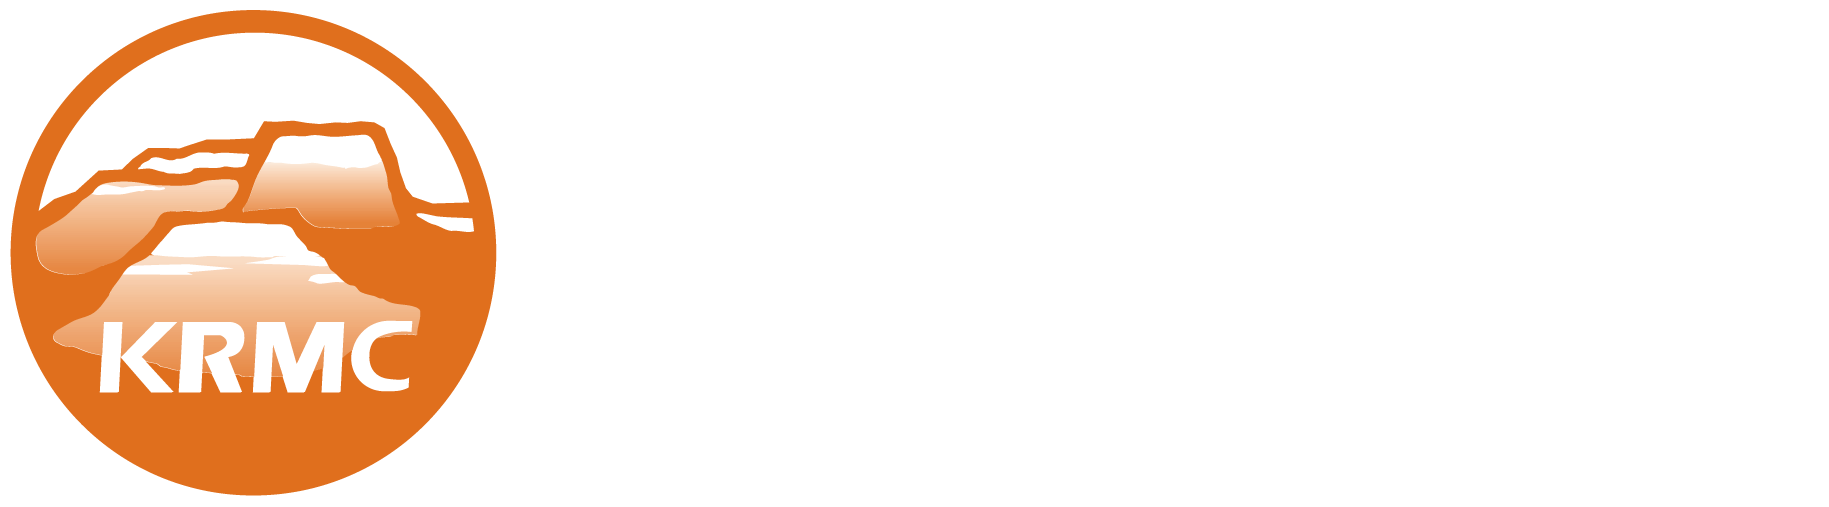 Kingman Regional Medical Center Logo